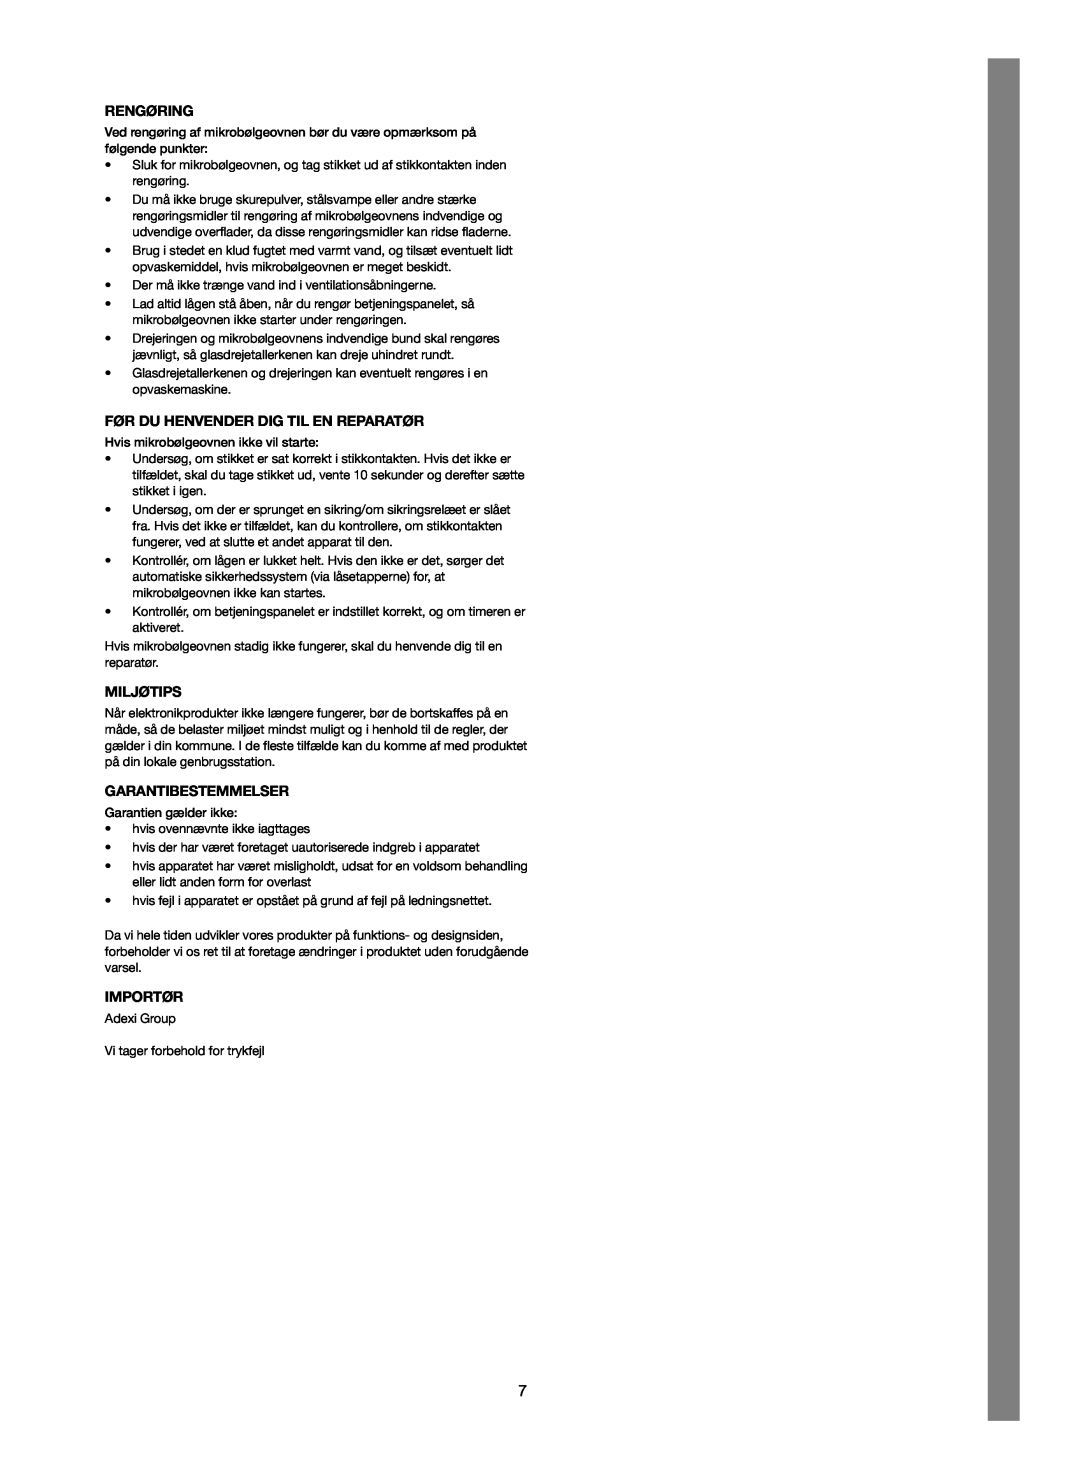 Melissa 253-012 manual Rengøring, Før Du Henvender Dig Til En Reparatør, Miljøtips, Garantibestemmelser, Importør 